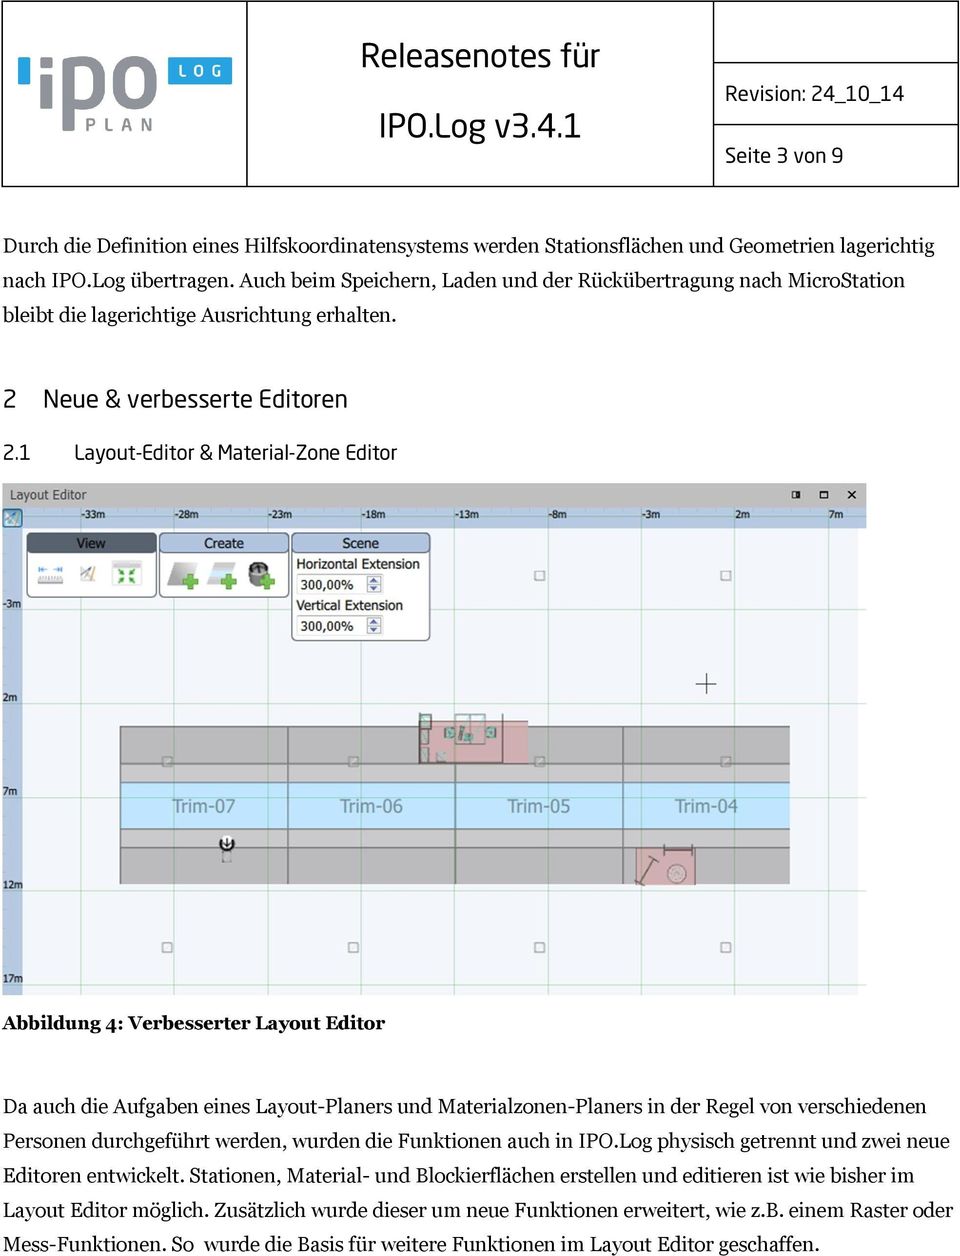 1 Layout-Editor & Material-Zone Editor Abbildung 4: Verbesserter Layout Editor Da auch die Aufgaben eines Layout-Planers und Materialzonen-Planers in der Regel von verschiedenen Personen durchgeführt